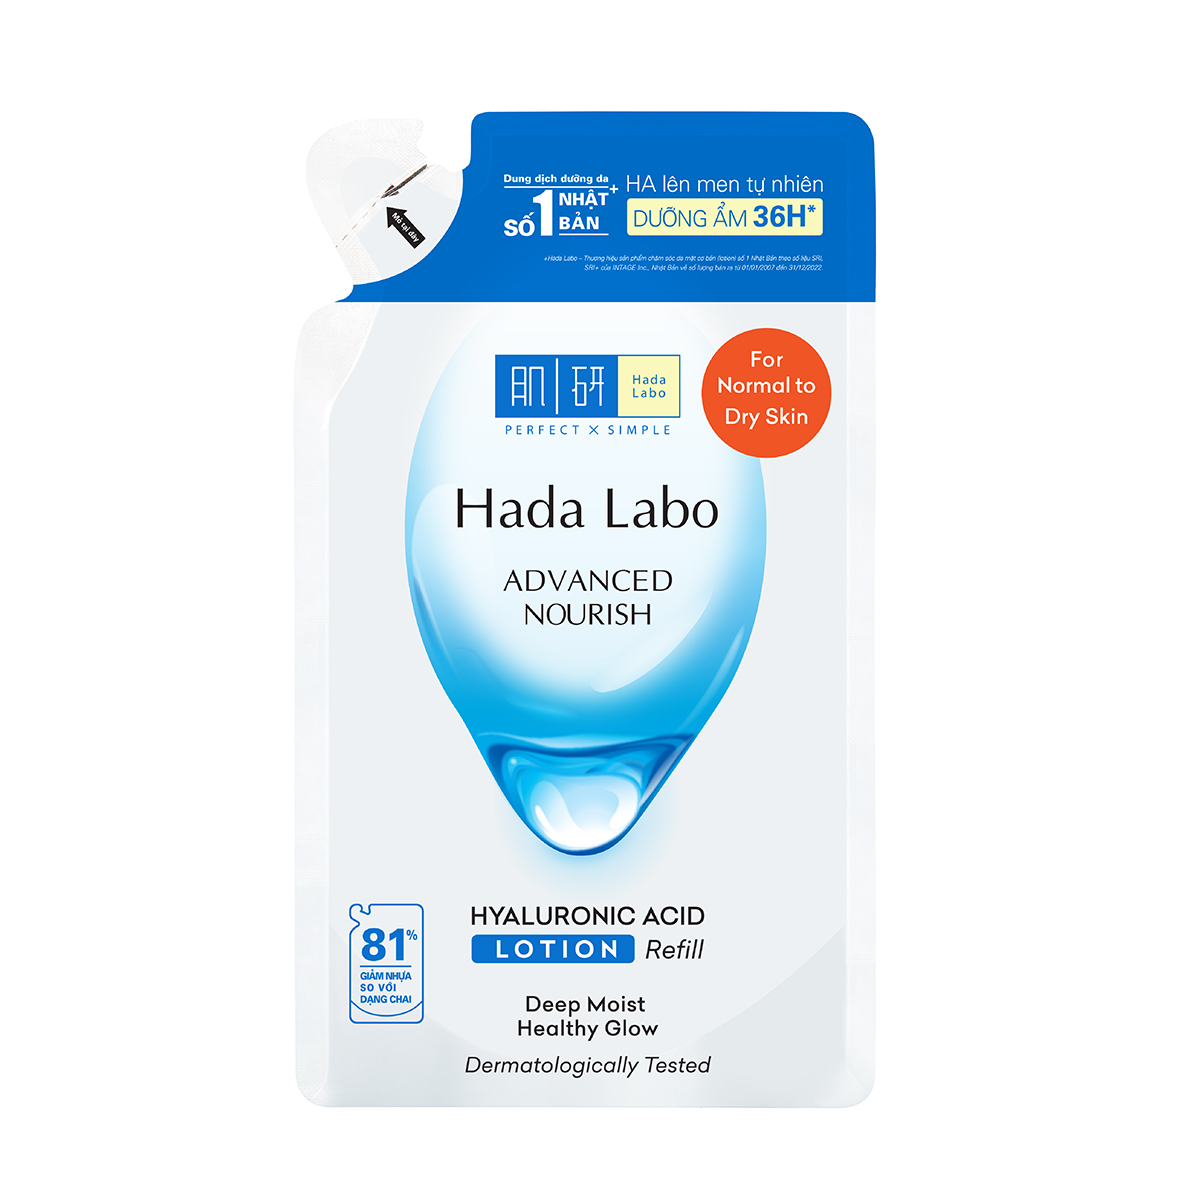 Túi refill lotion dưỡng ẩm Hada Labo Advance Nourish Hyaluronic Acid cho da thường và da khô 170ml